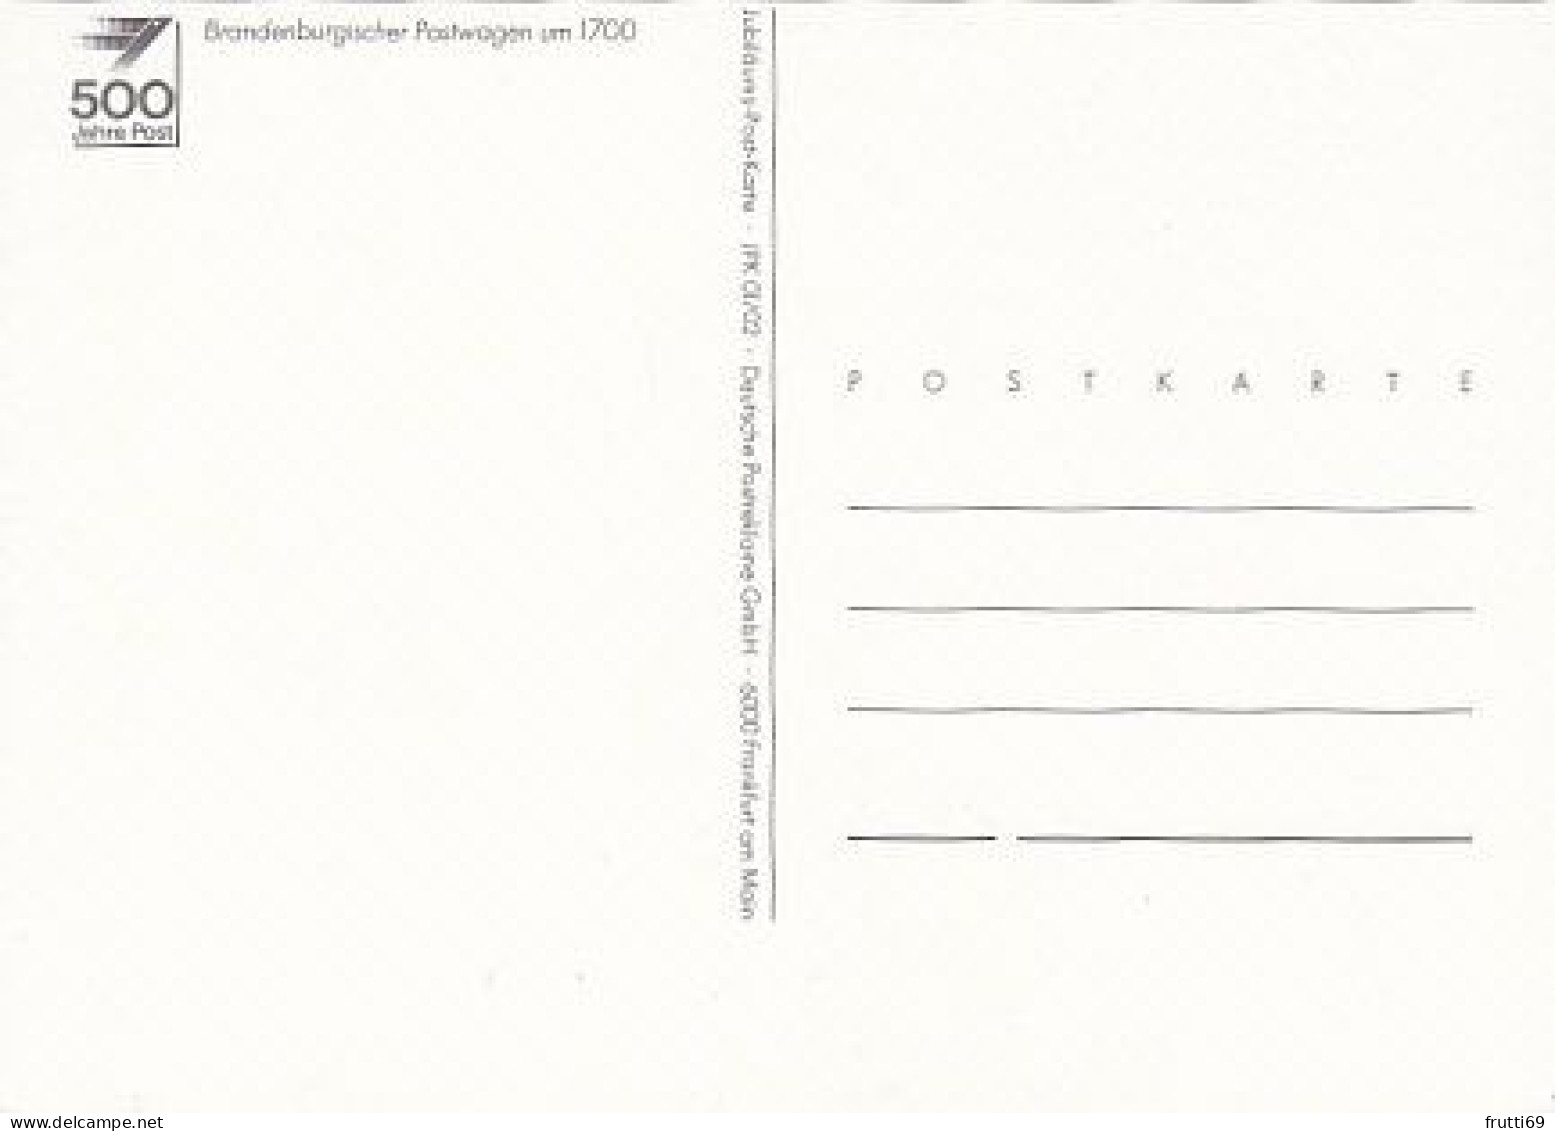 AK 216141 POST - Brandenburgischer Postwagen Um 1700 - Postal Services